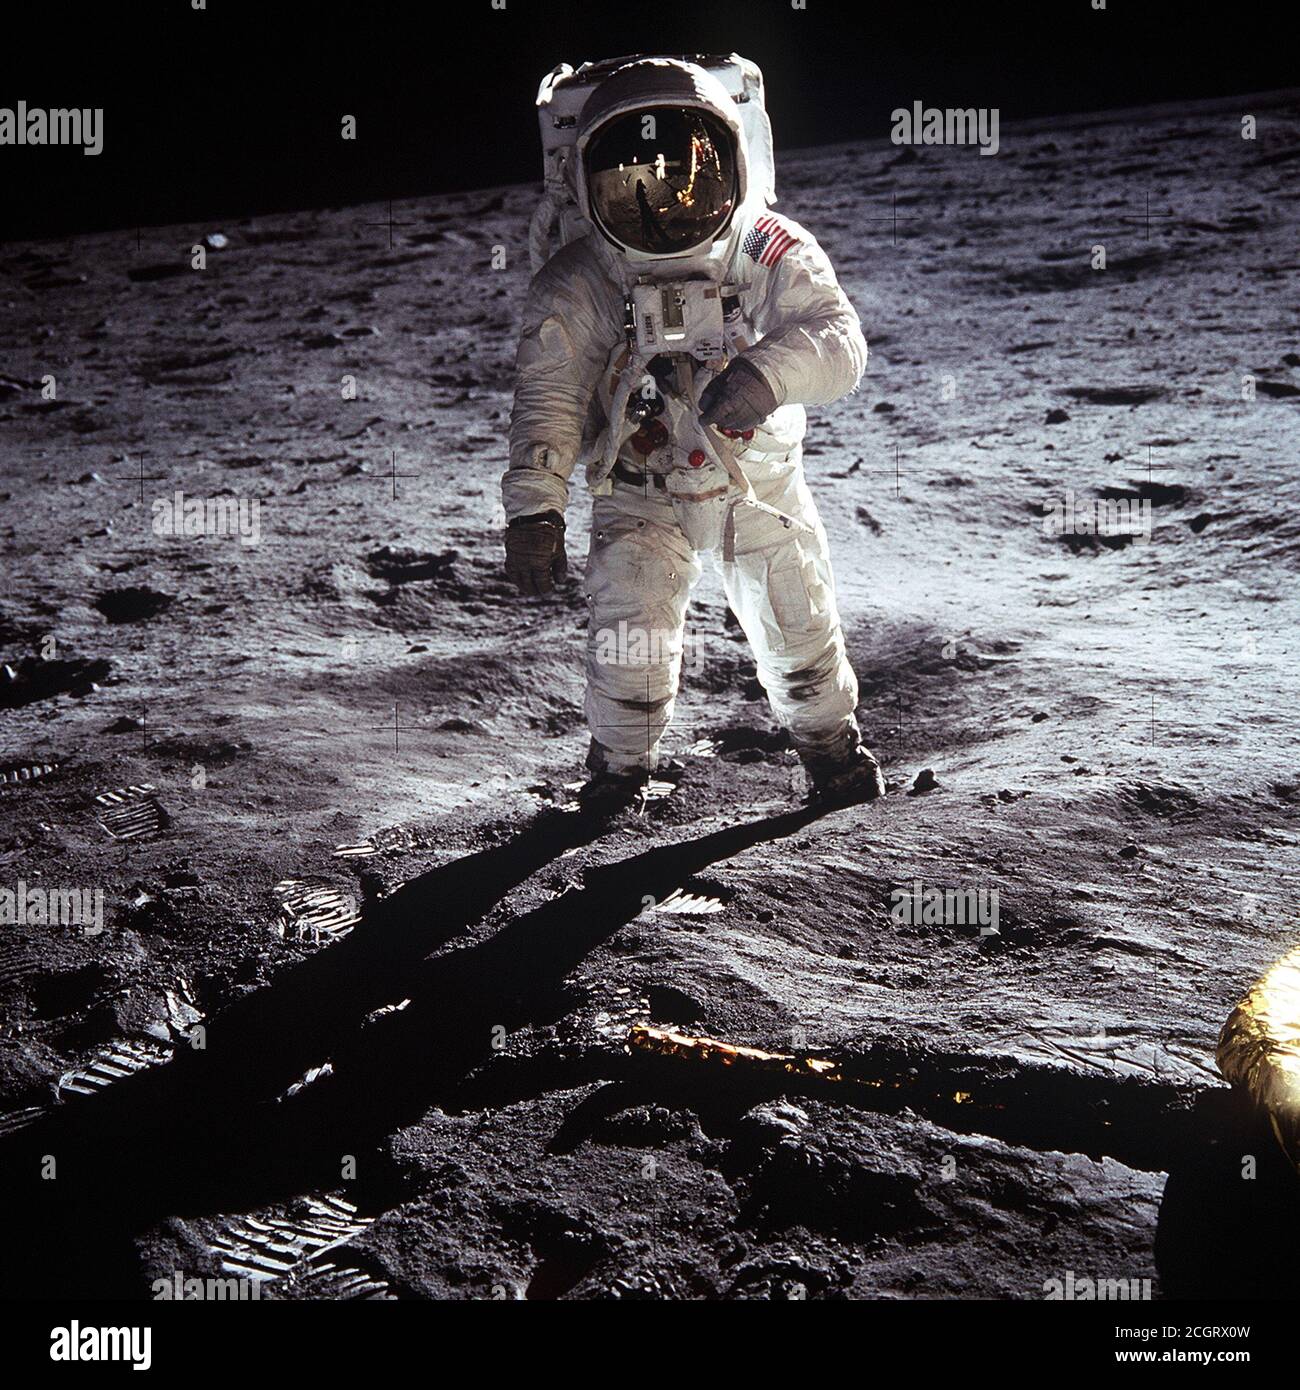 Astronaut Buzz Aldrin, Pilot des Mondmoduls, wandert auf der Oberfläche des Mondes nahe dem Bein der Mondlandefähre (LM) 'Adler' während der Apollo 11 Exravehicular Aktivität (EVA). Astronaut Neil A. Armstrong, Kommandant, nahm dieses Foto mit einer 70mm Mondoberflächenkamera auf. Während die Astronauten Armstrong und Aldrin in der Mondlandefähre (LM) 'Adler' abstiegen, um die Region Sea of Tranquility des Mondes zu erkunden, blieb Astronaut Michael Collins, Kommandomodulpilot, bei den Command and Service Modules (CSM) 'Columbia' in der Mondbahn. Stockfoto